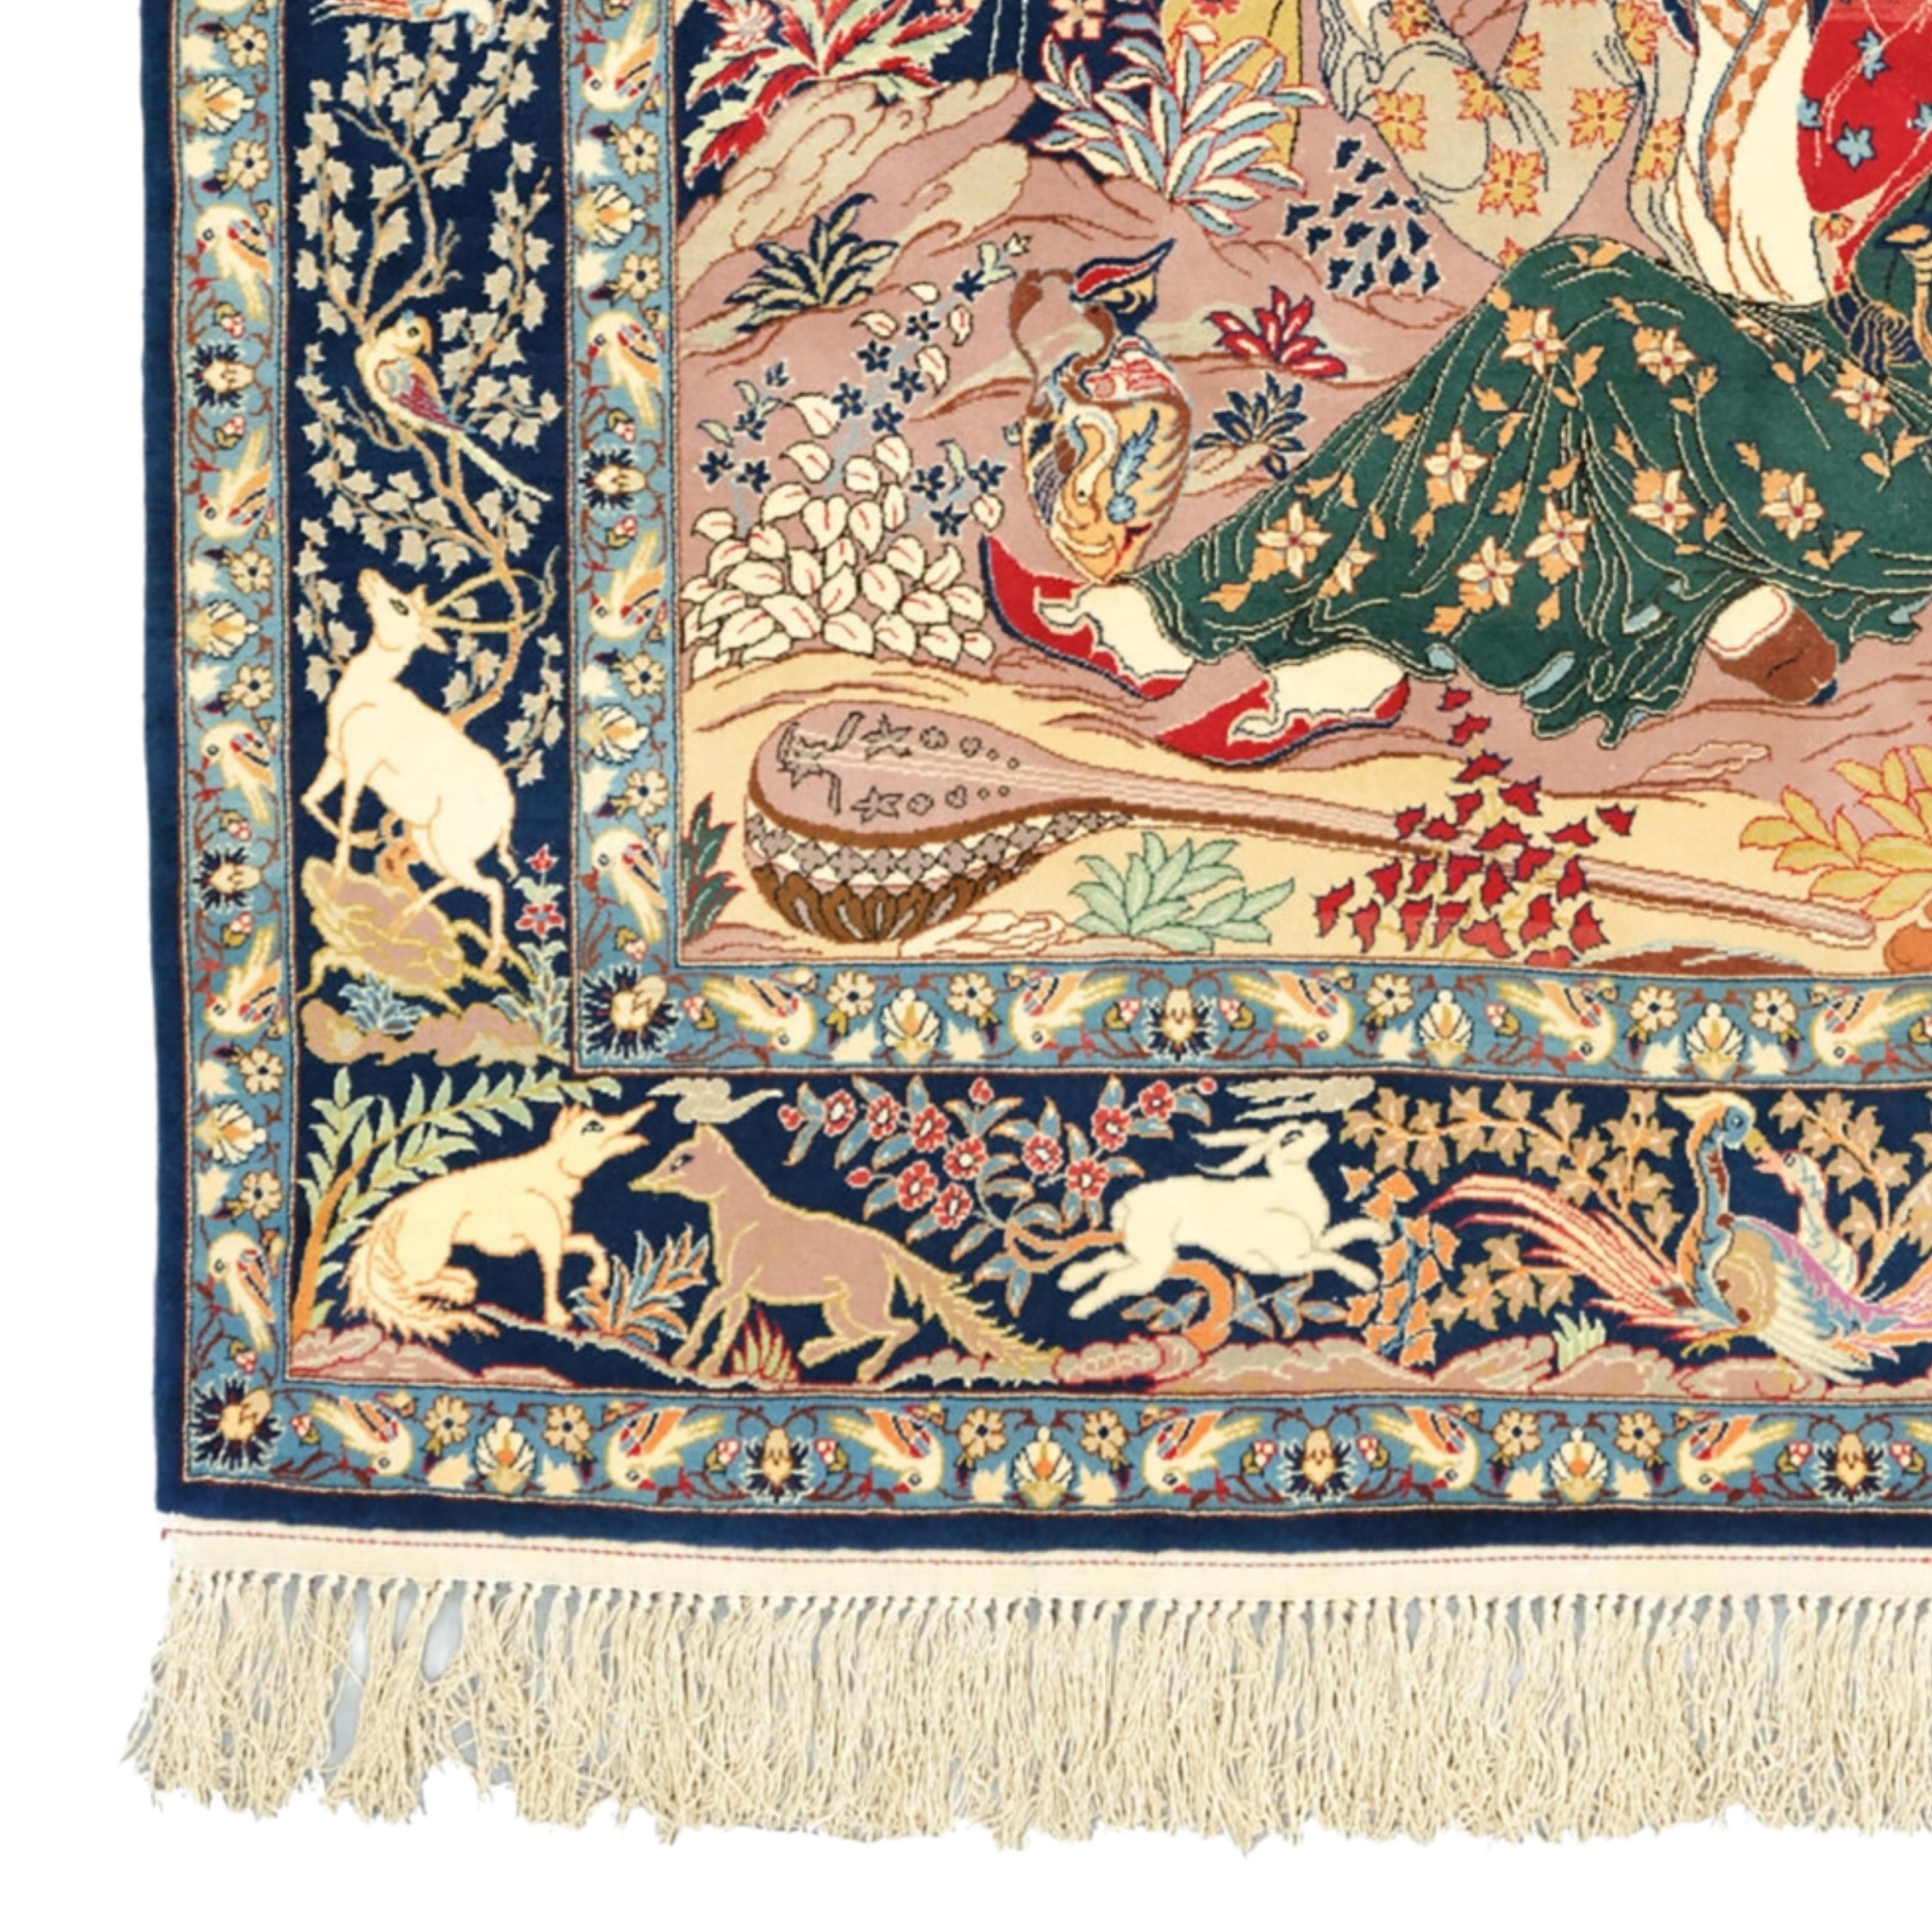 Antiker Bildteppich aus Isfahan
Bildteppich aus dem späten 19. Jahrhundert aus Isfahan in perfektem Zustand
Größe : 110 x 164 cm

Dieser außergewöhnliche Teppich wird Sie mit seinen komplizierten Mustern und leuchtenden Farben faszinieren, die die